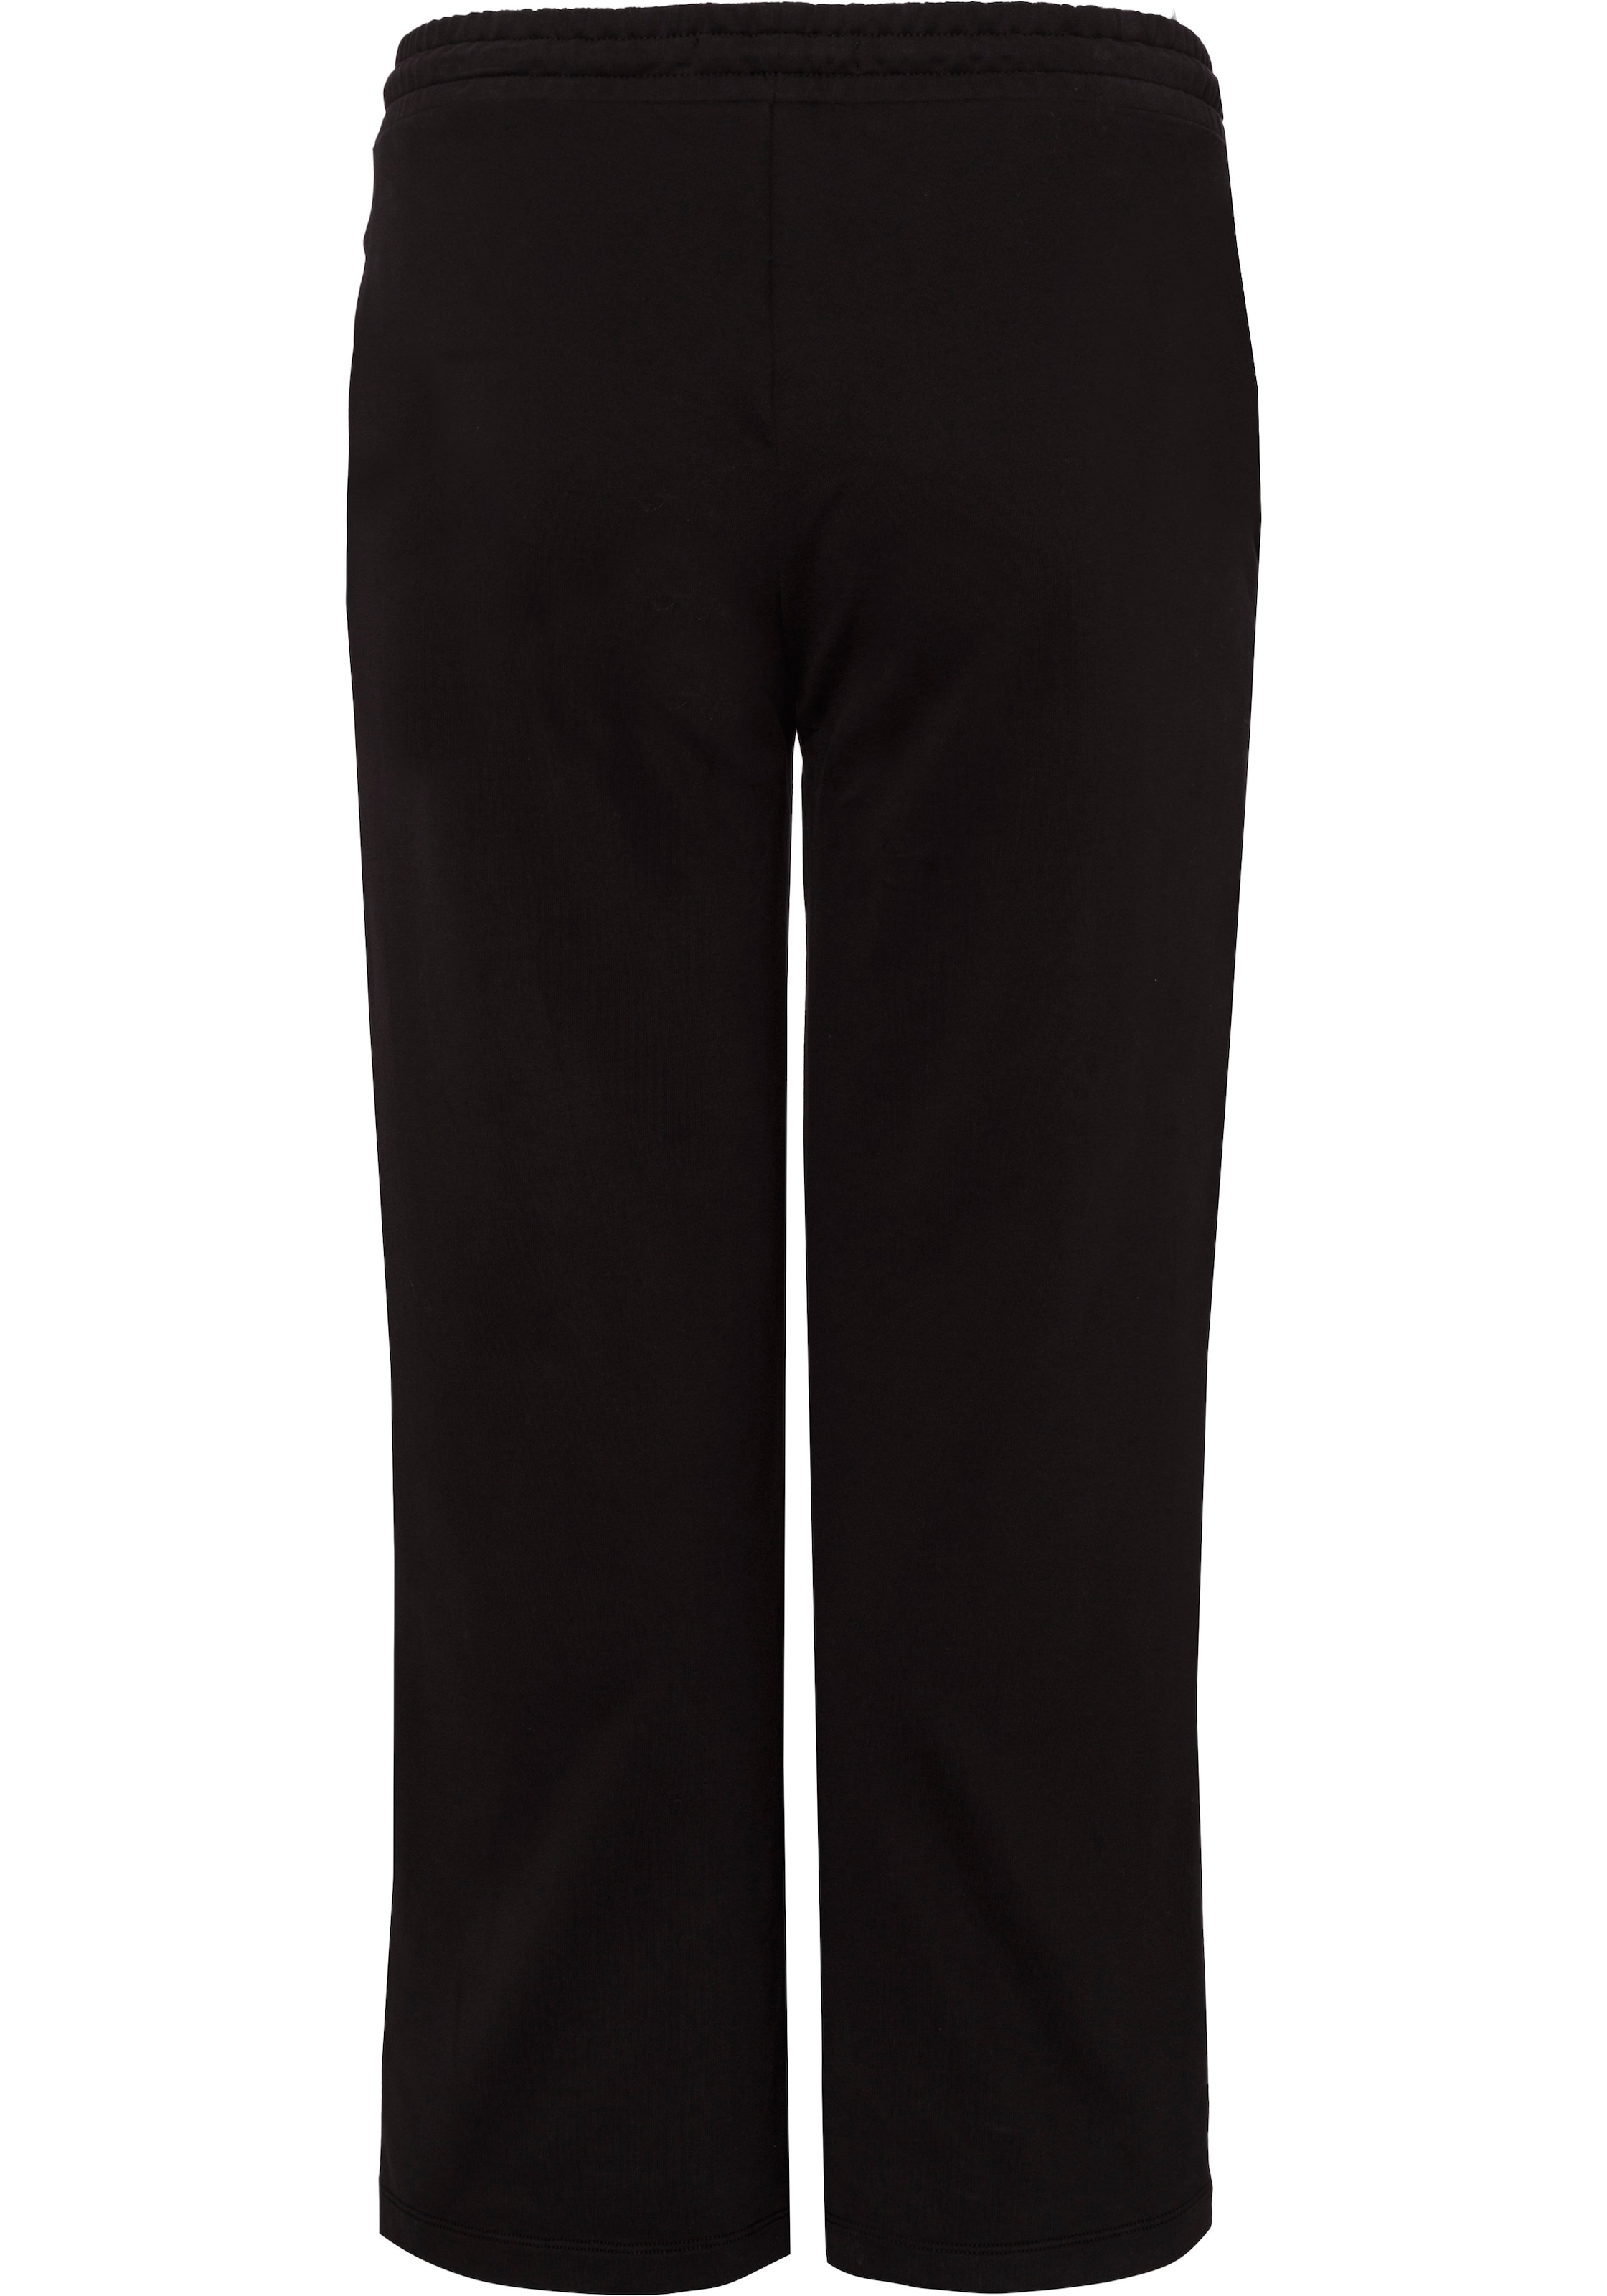 Calvin Klein Jeans Sweathose, Plus modischer (1 in tlg.), Culotte-Optik gleich